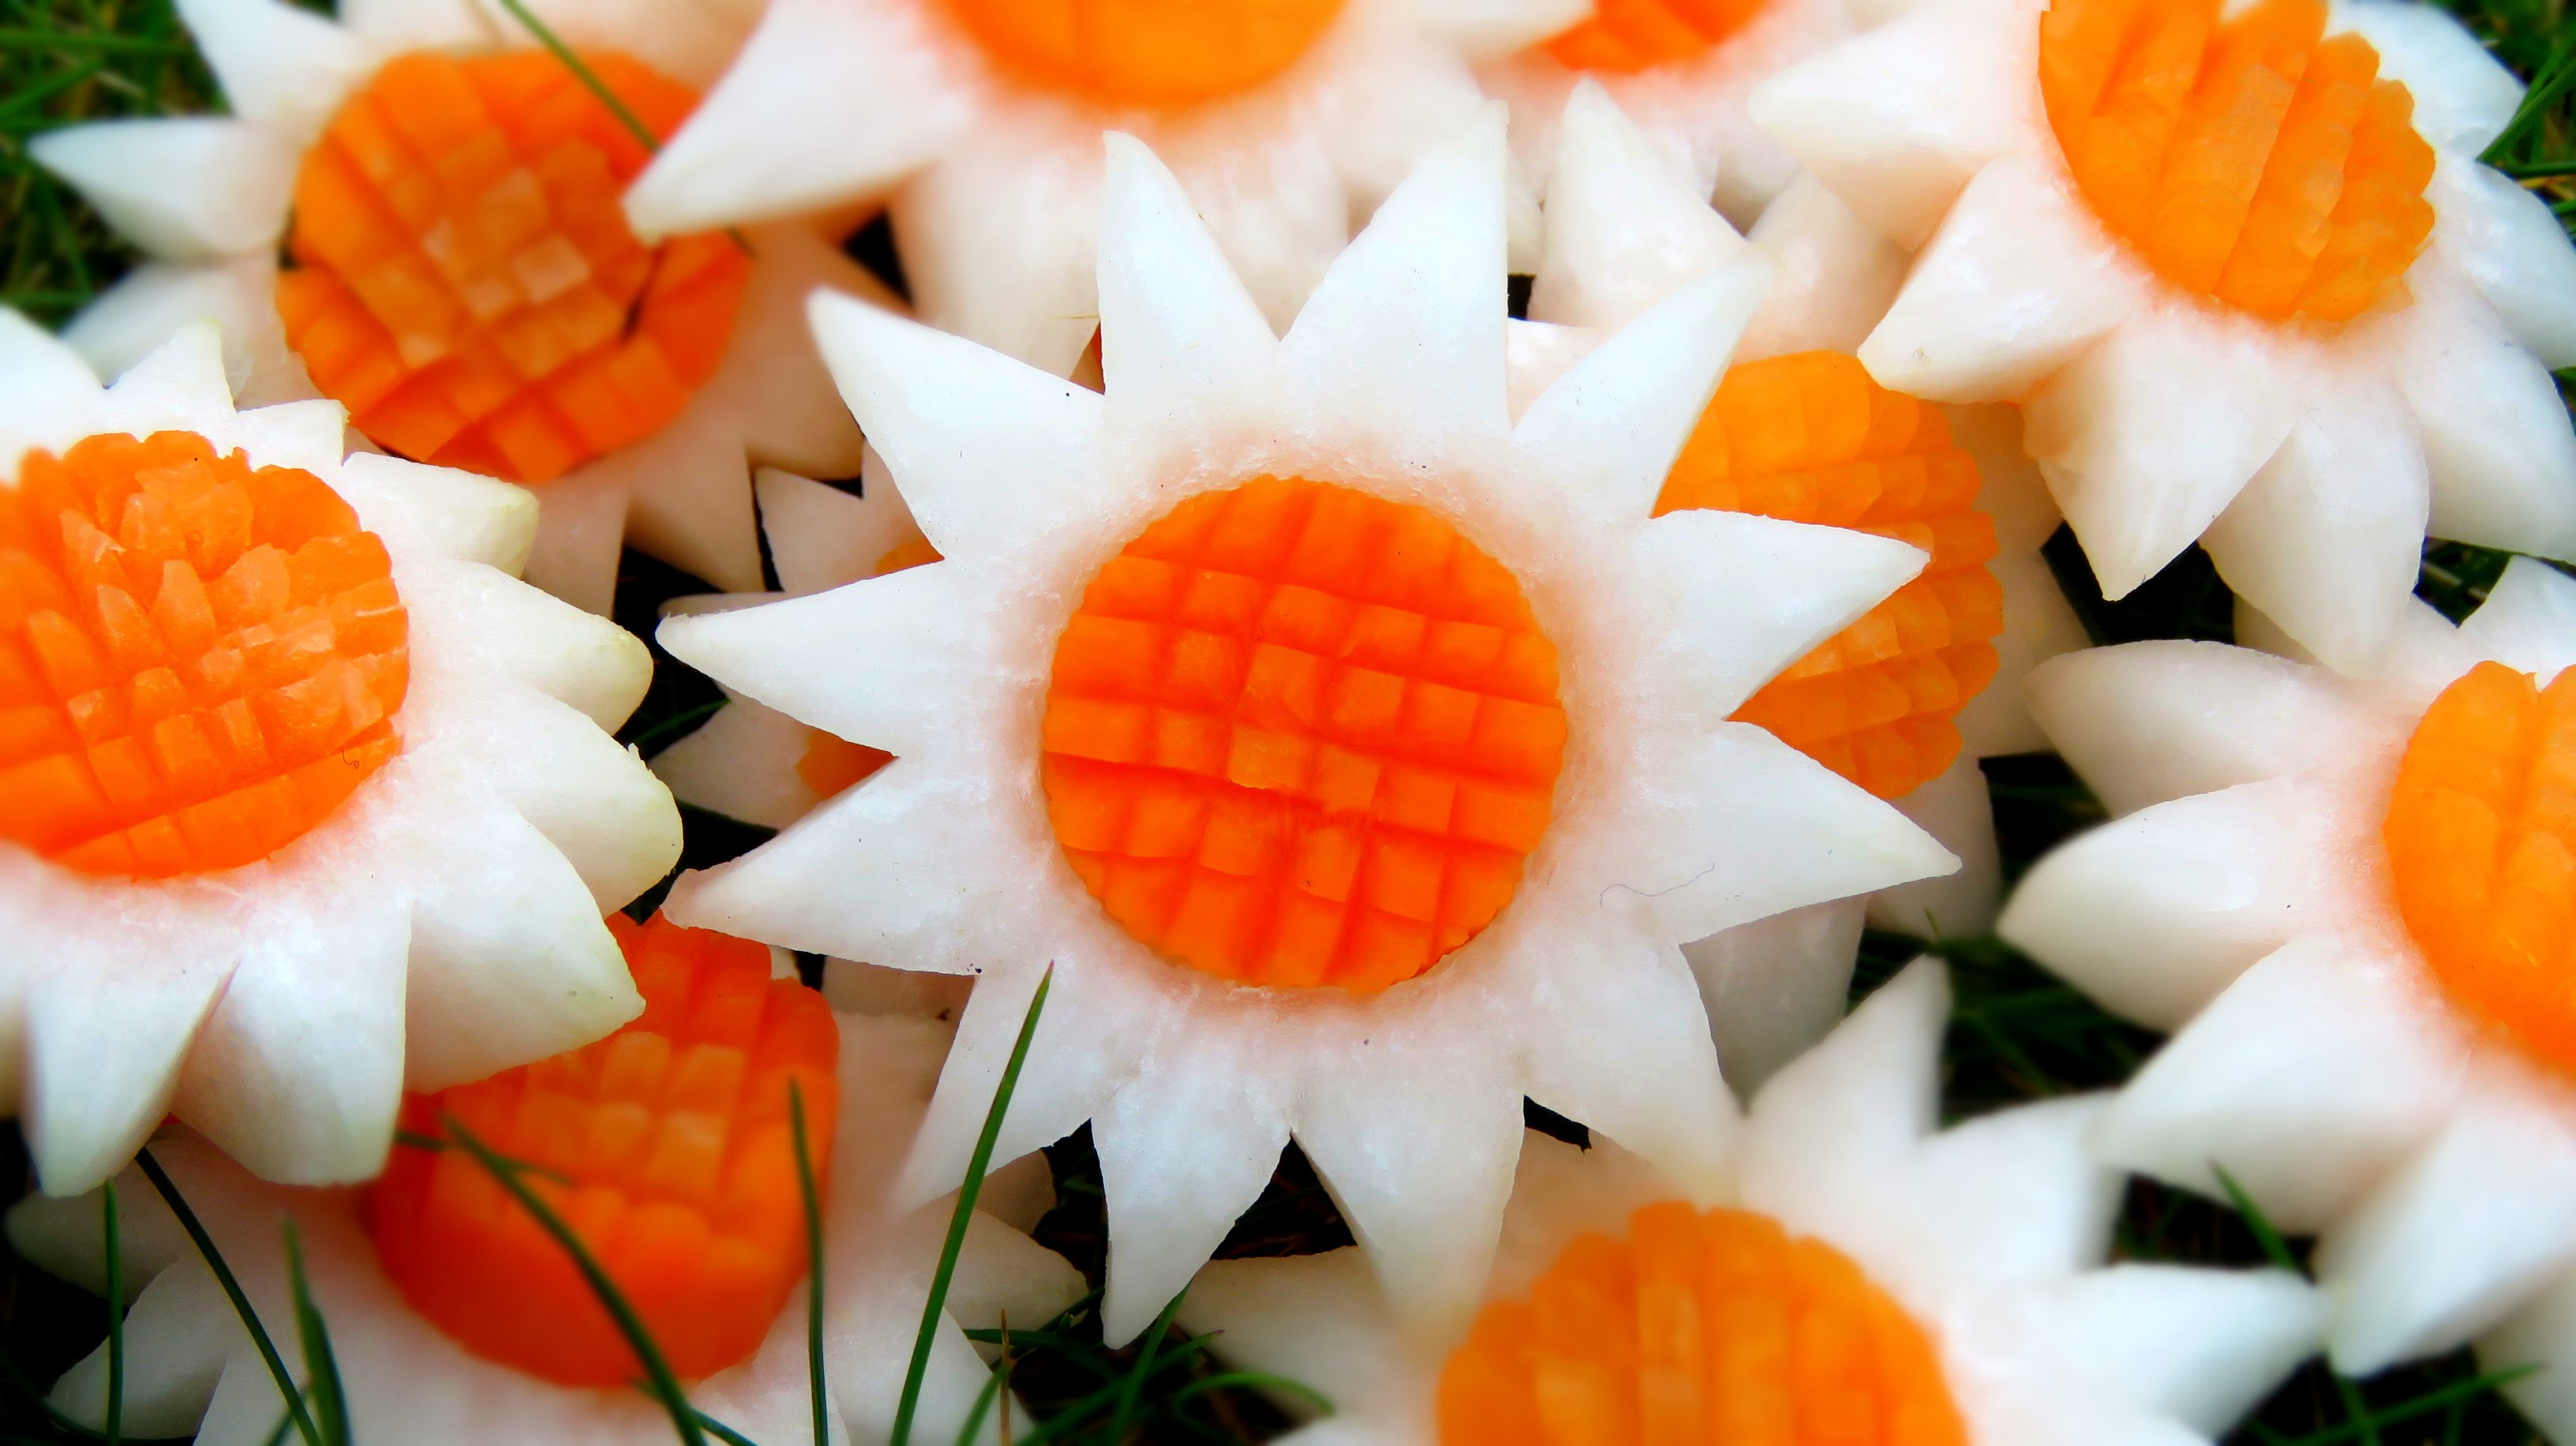 Art In Vegetable White SunFlowers | Vegetable Carving Garnish ...